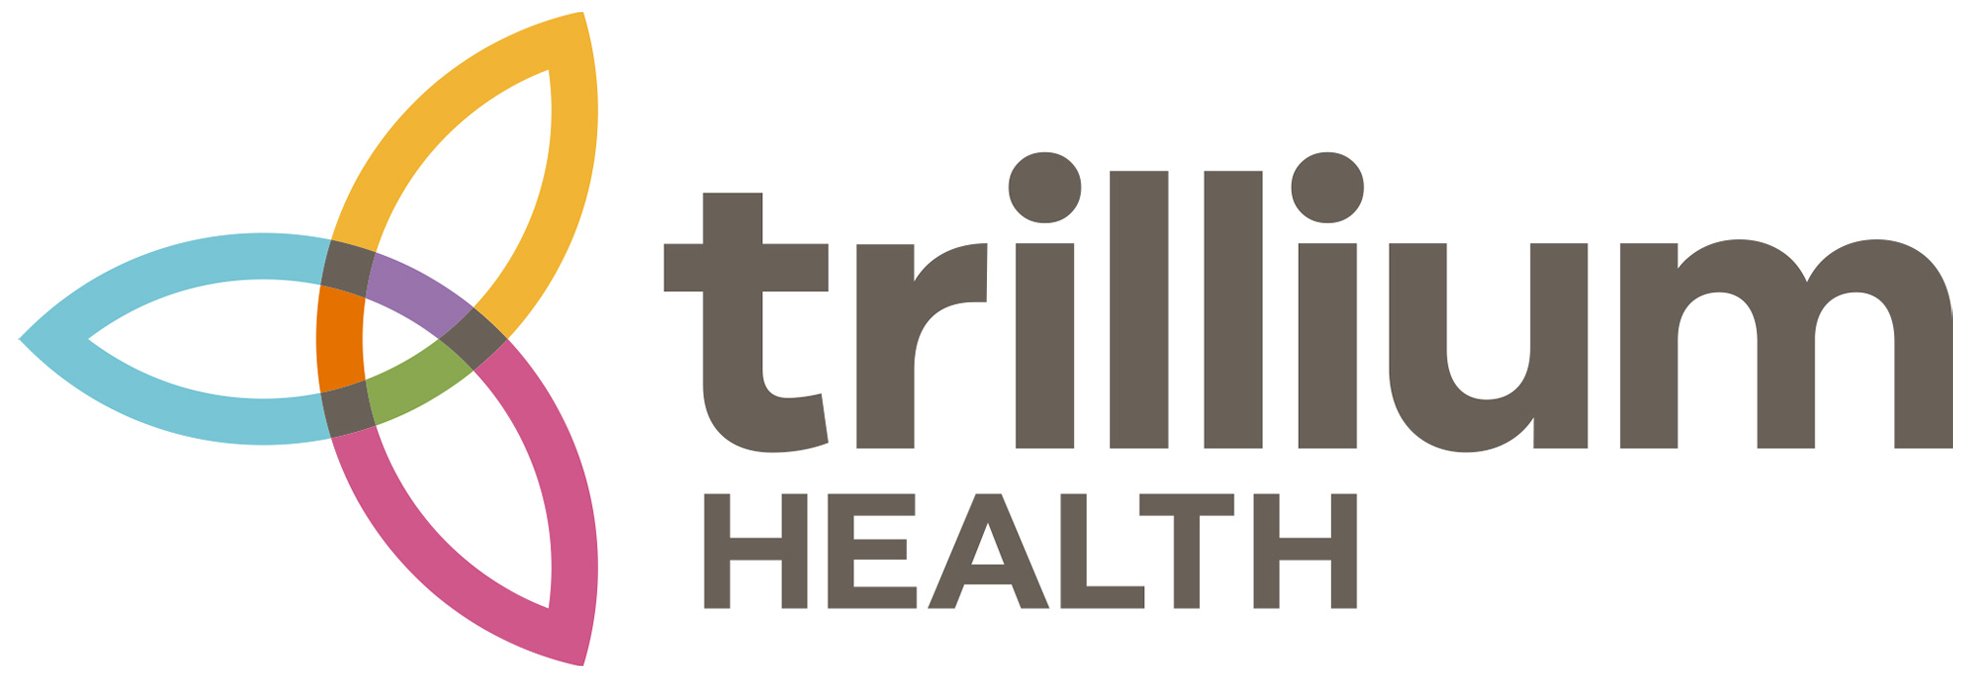 Community Builder Sponsor: Trillium Health